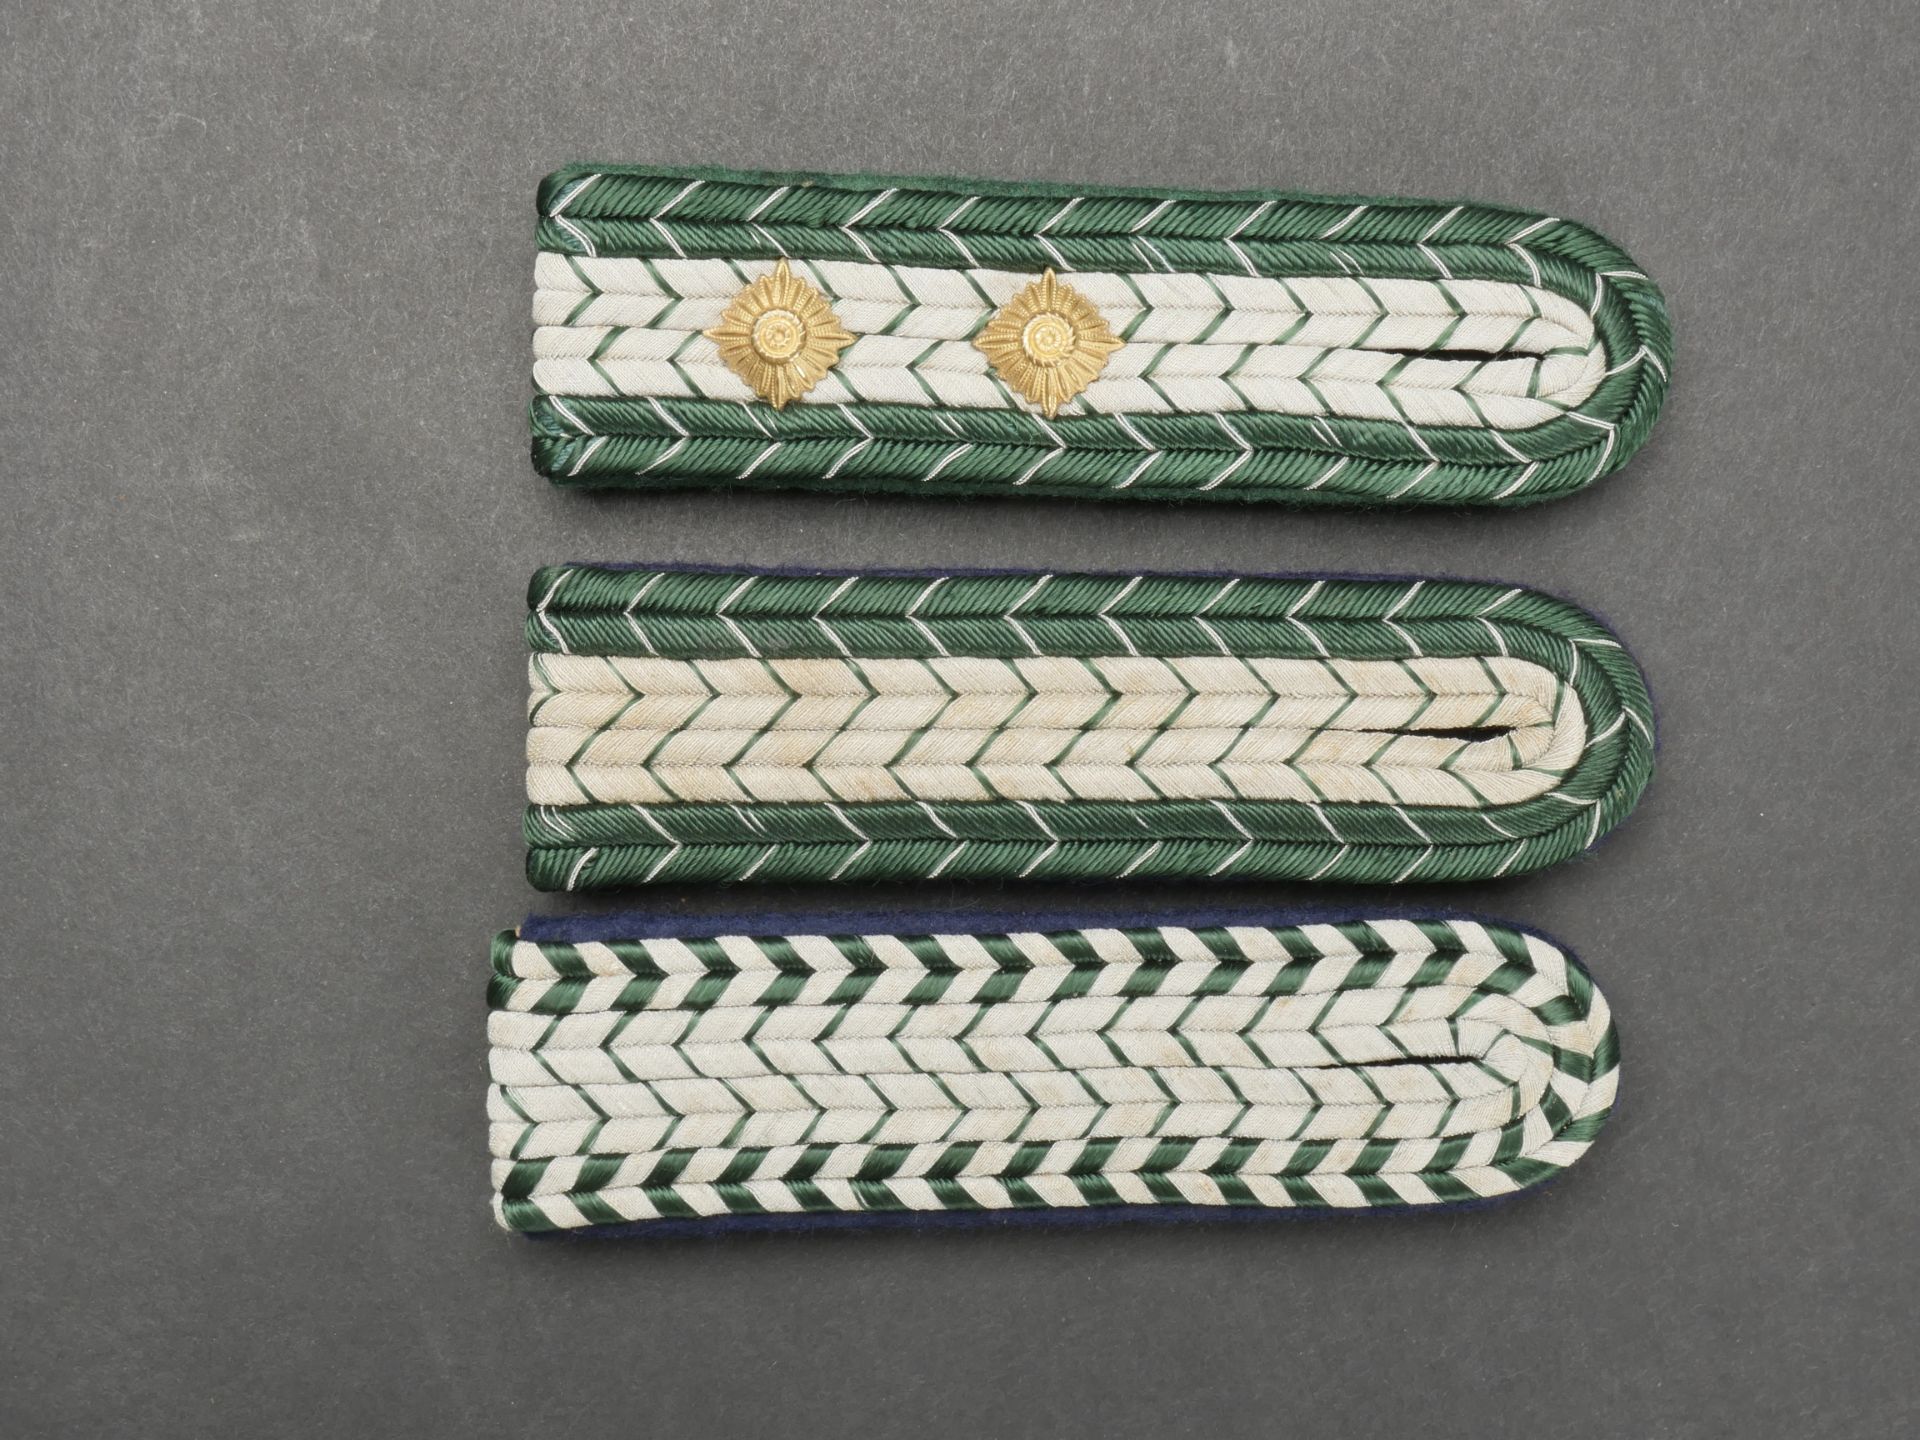 Pattes d epaule douane et RSV. Customs and RSV shoulder straps. - Image 3 of 5